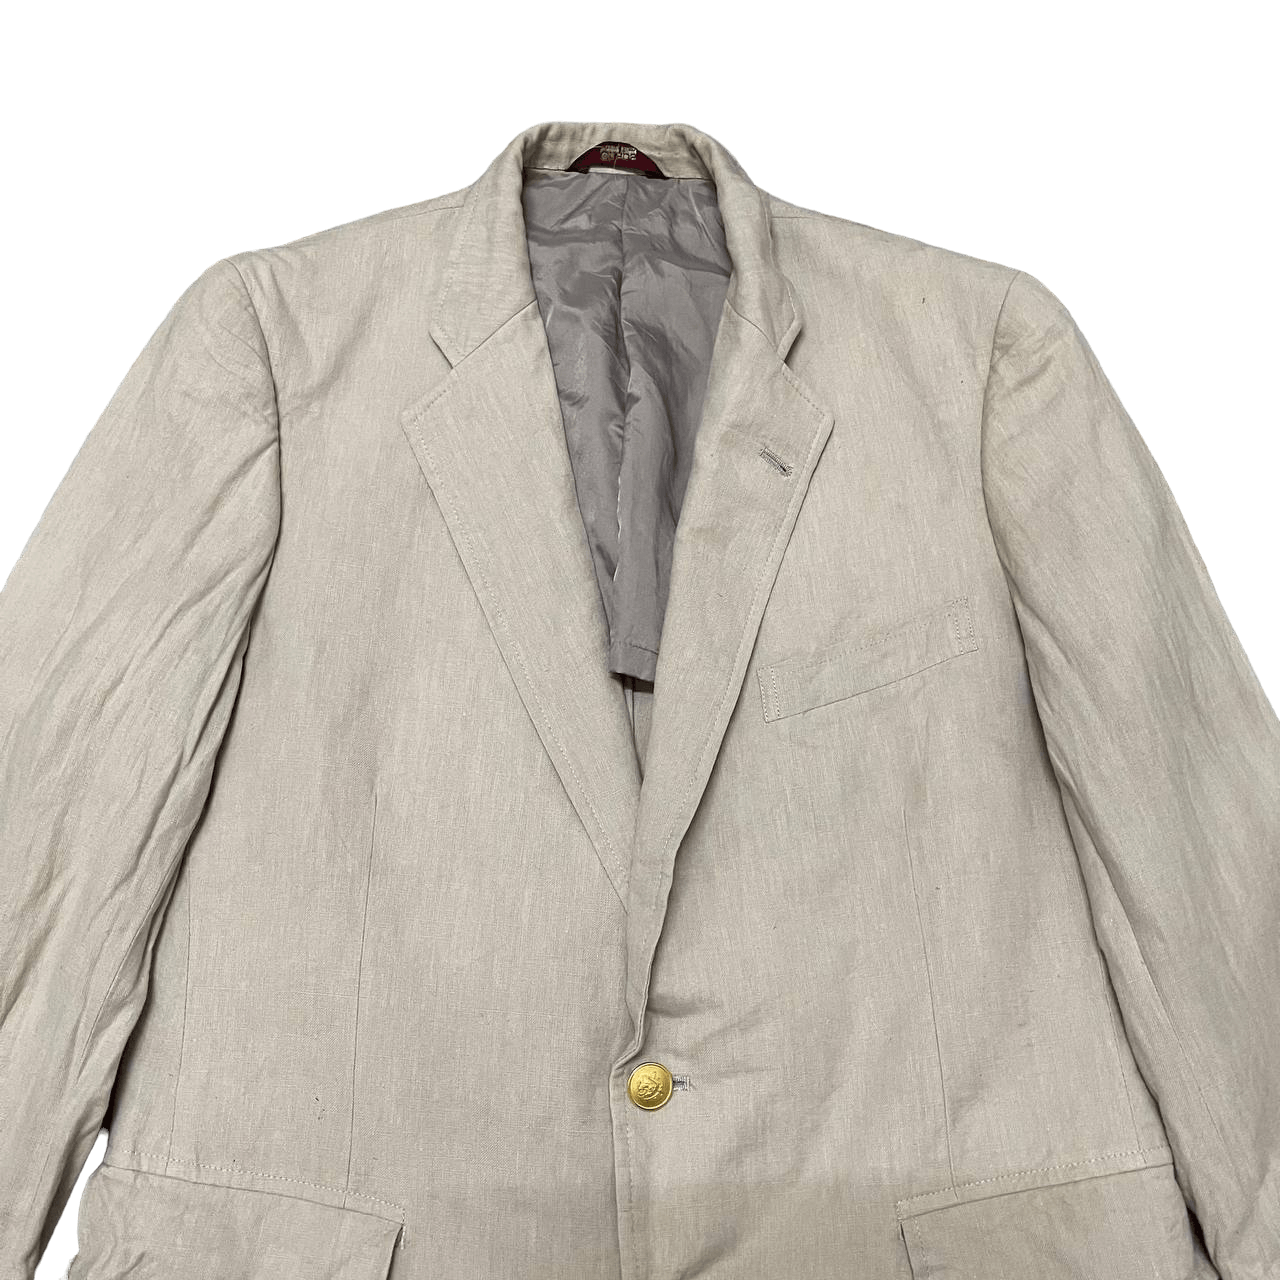 Vintage Chaps Ralph Lauren Gold Button Blazer Jacket - 2